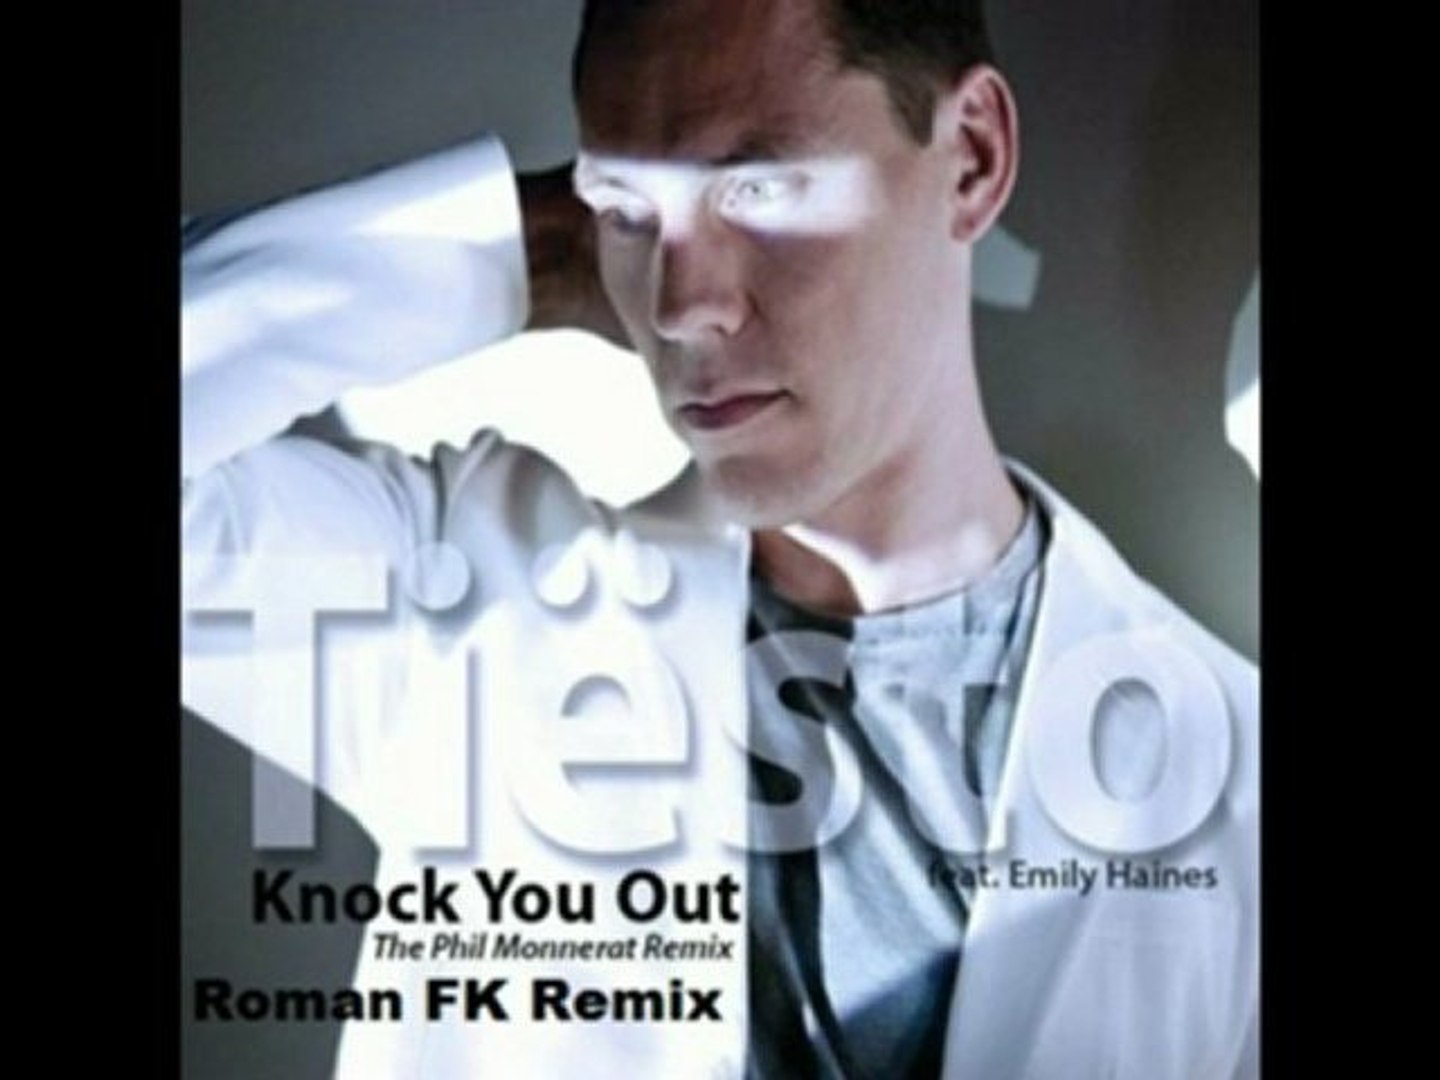 Tiesto - Knock You Out (Roman FK Remix) - Vidéo Dailymotion